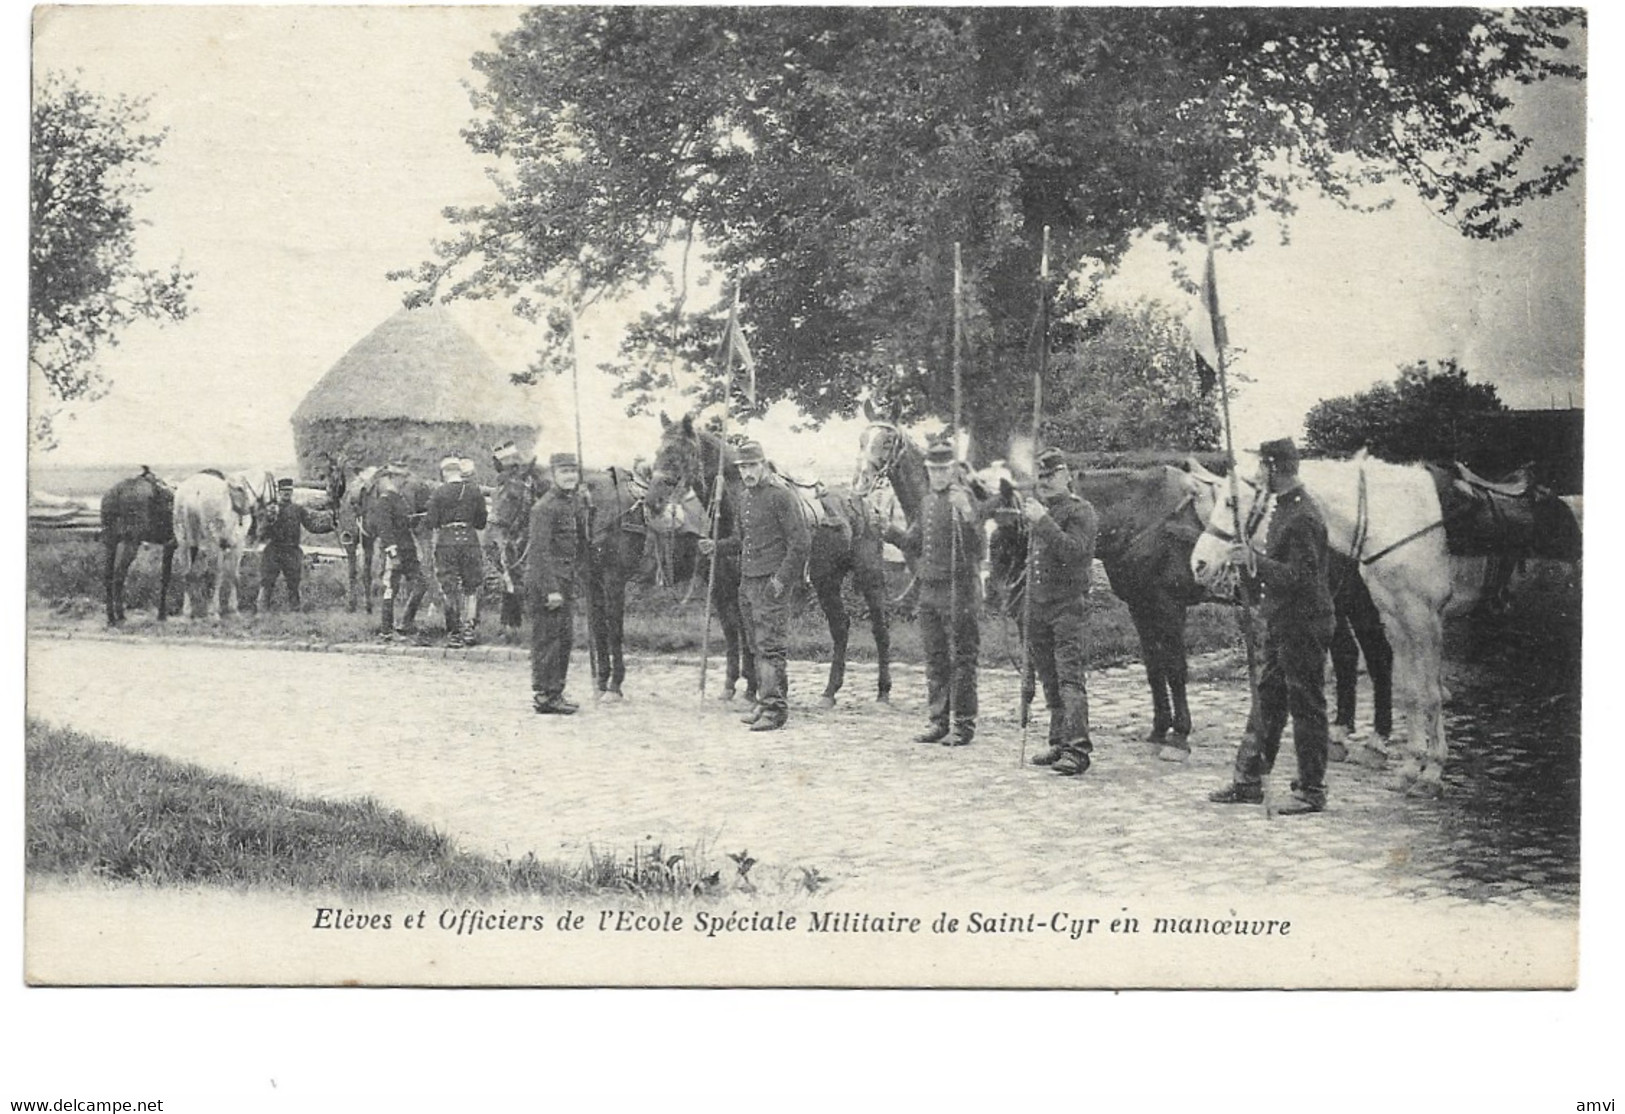 (4662) Eleves Et Officiers De L'école Speciale Militaire De Saint Cyr En Manoeuvre - St. Cyr L'Ecole